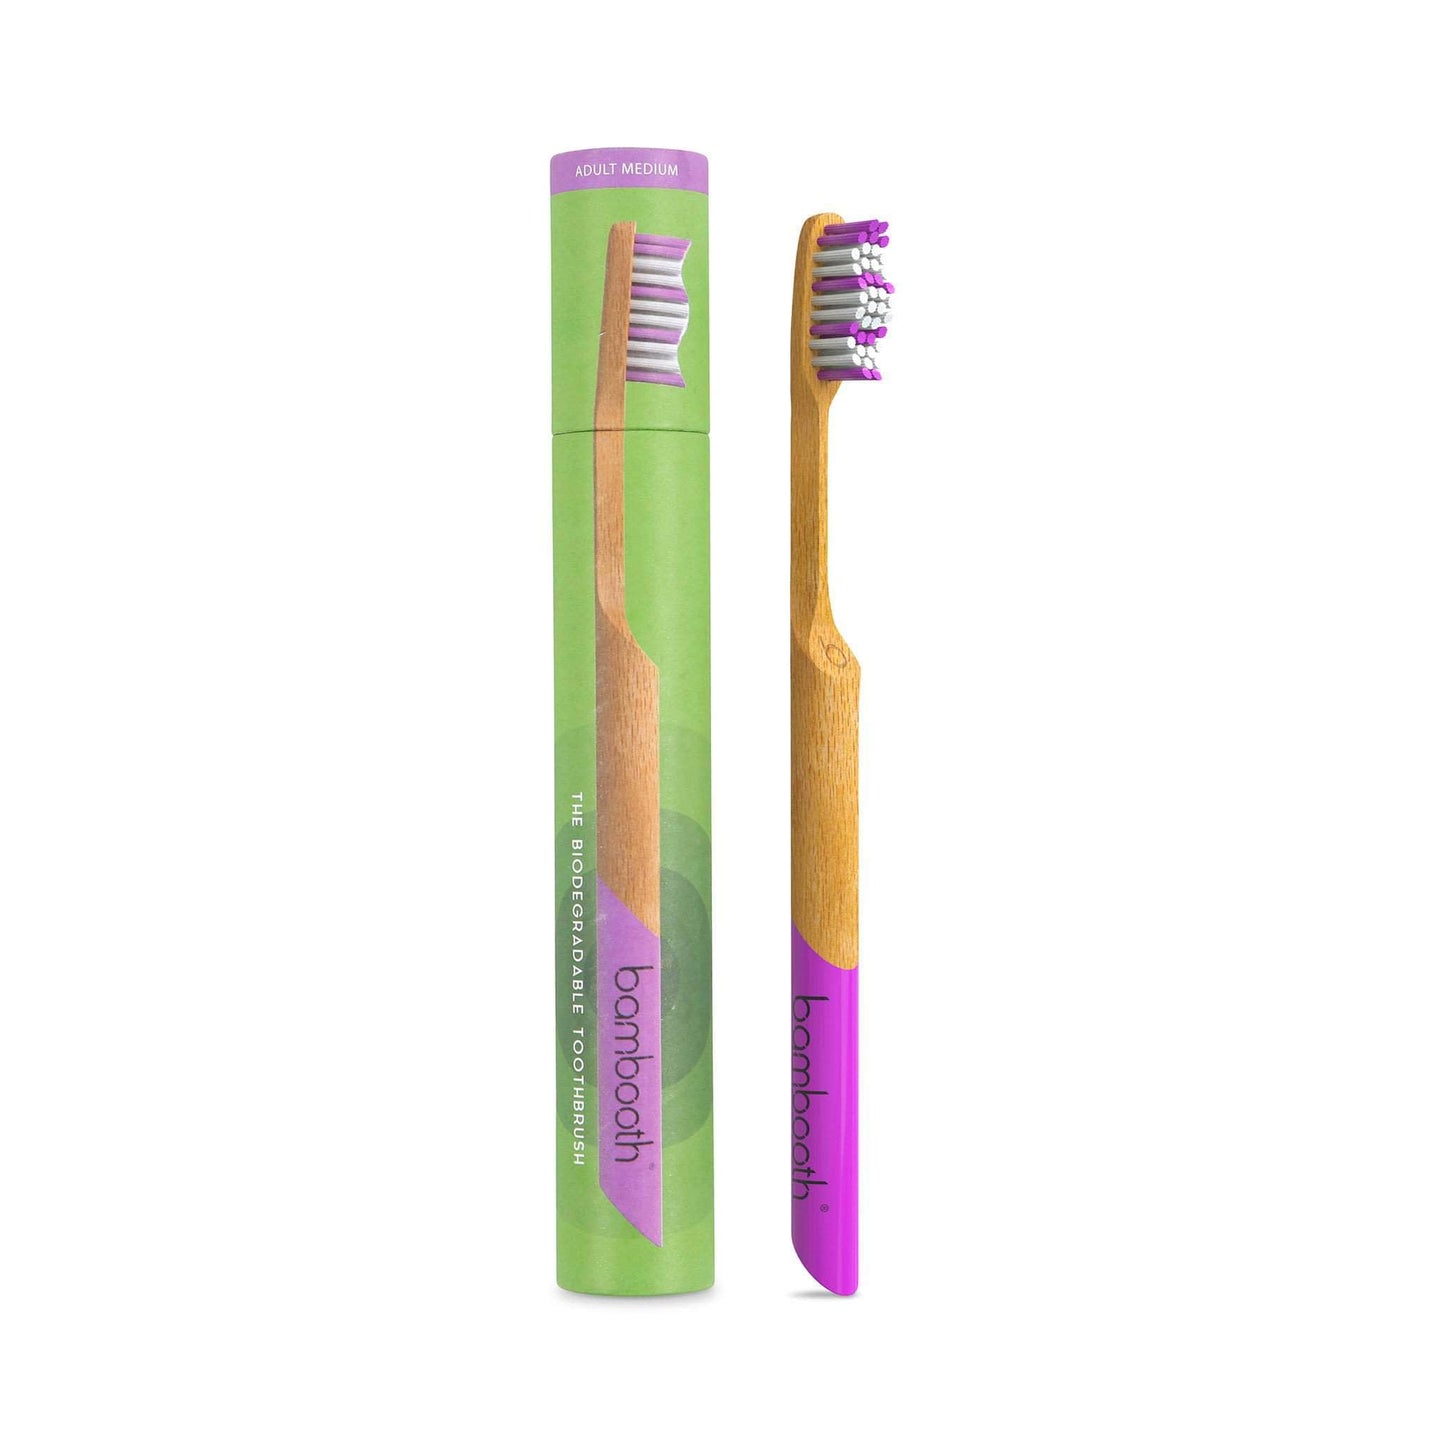 Bambooth Toothbrush Bamboo Toothbrush Medium - Coral Pink